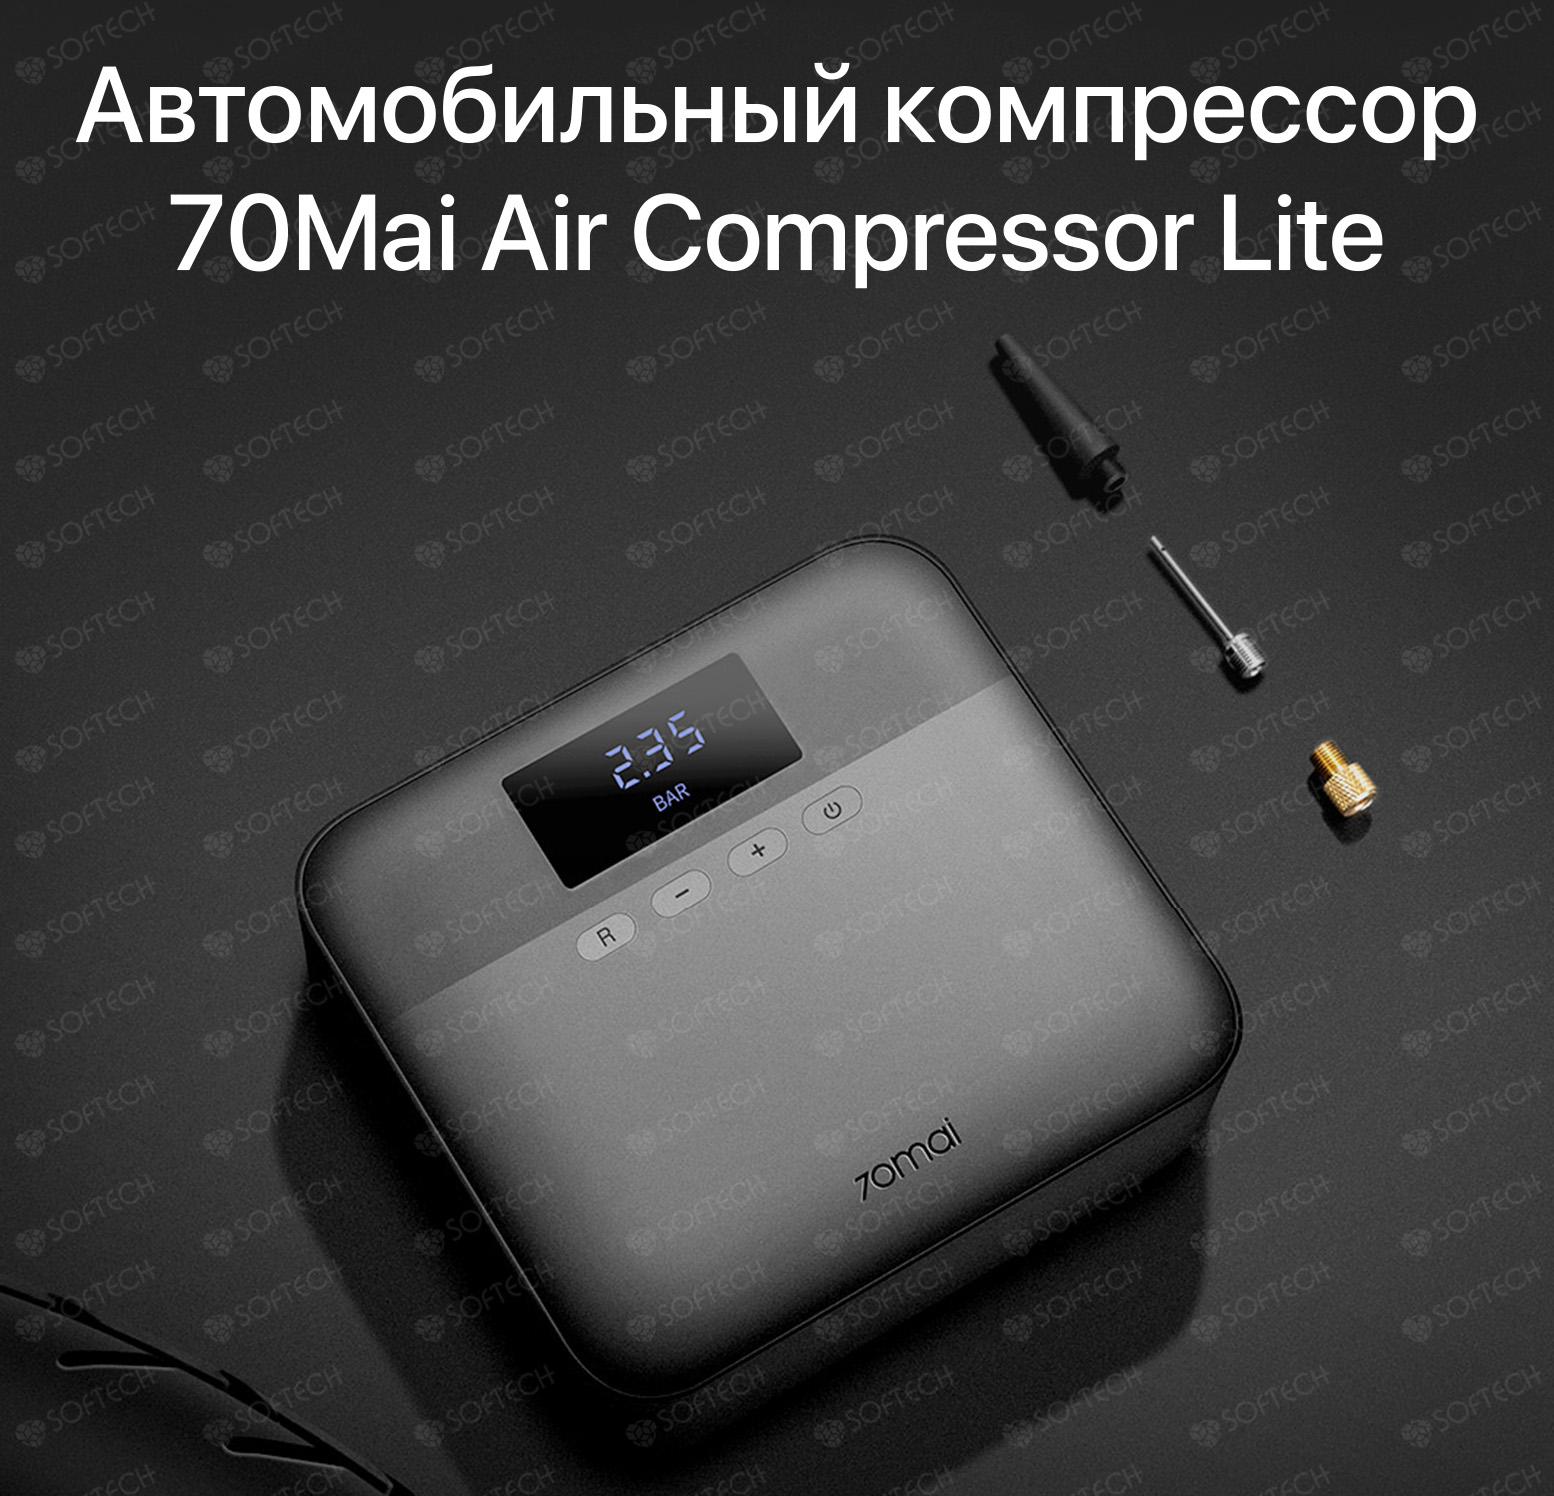 Компрессор 70mai air compressor tp03. Автомобильный компрессор Xiaomi 70mai Air Compressor Lite. Автомобильный компрессор 70mai Air Compressor MIDRIVE tp01. Автомобильный компрессор Xiaomi 70mai Air Compressor MIDRIVE tp01. Автомобильный компрессор 70mai Air Compressor Lite черный.